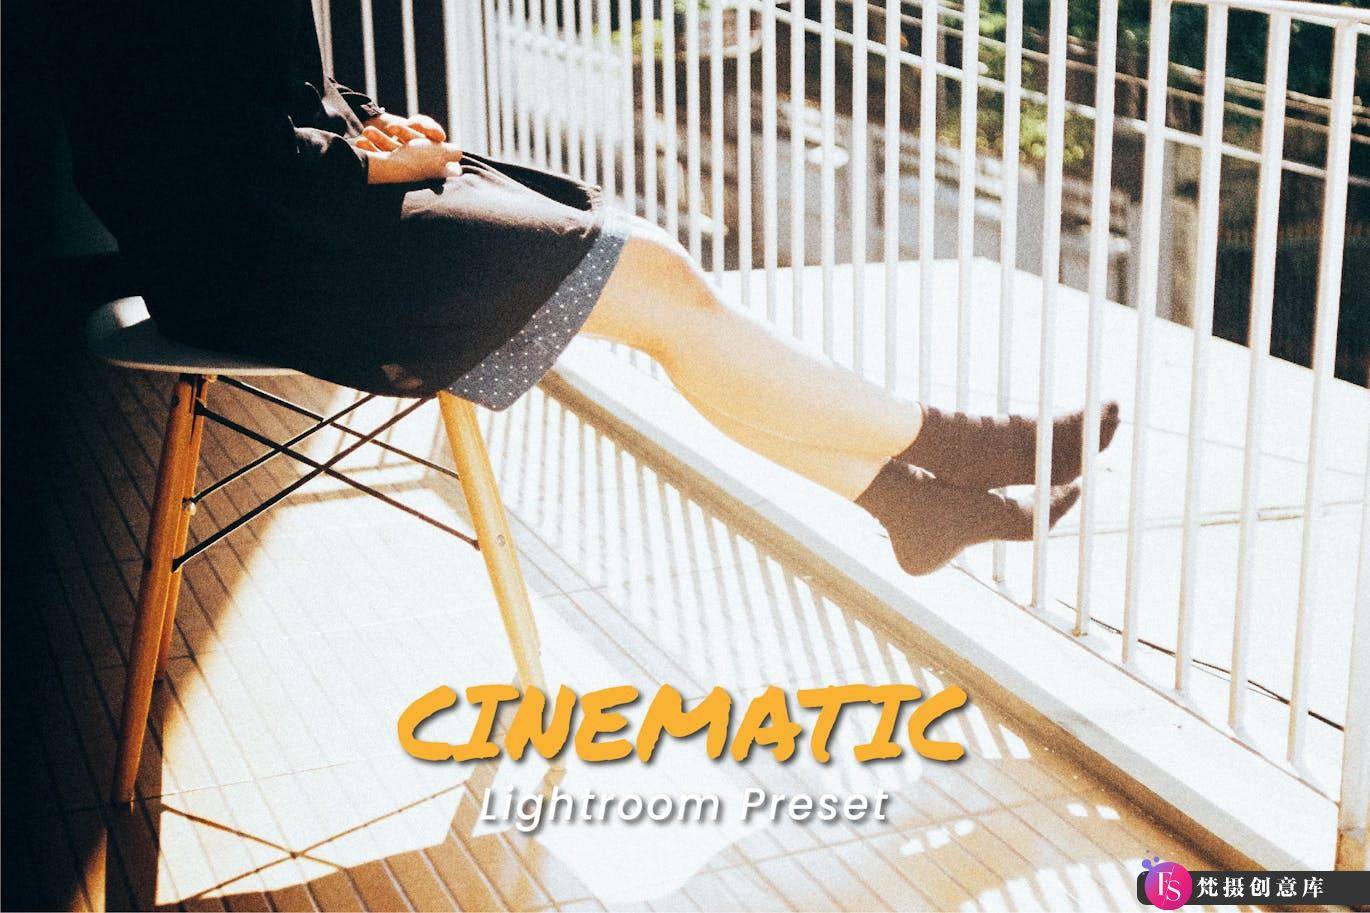 电影胶片人像后期调色Lightroom预设 Cinematic Lightroom Preset-梵摄创意库